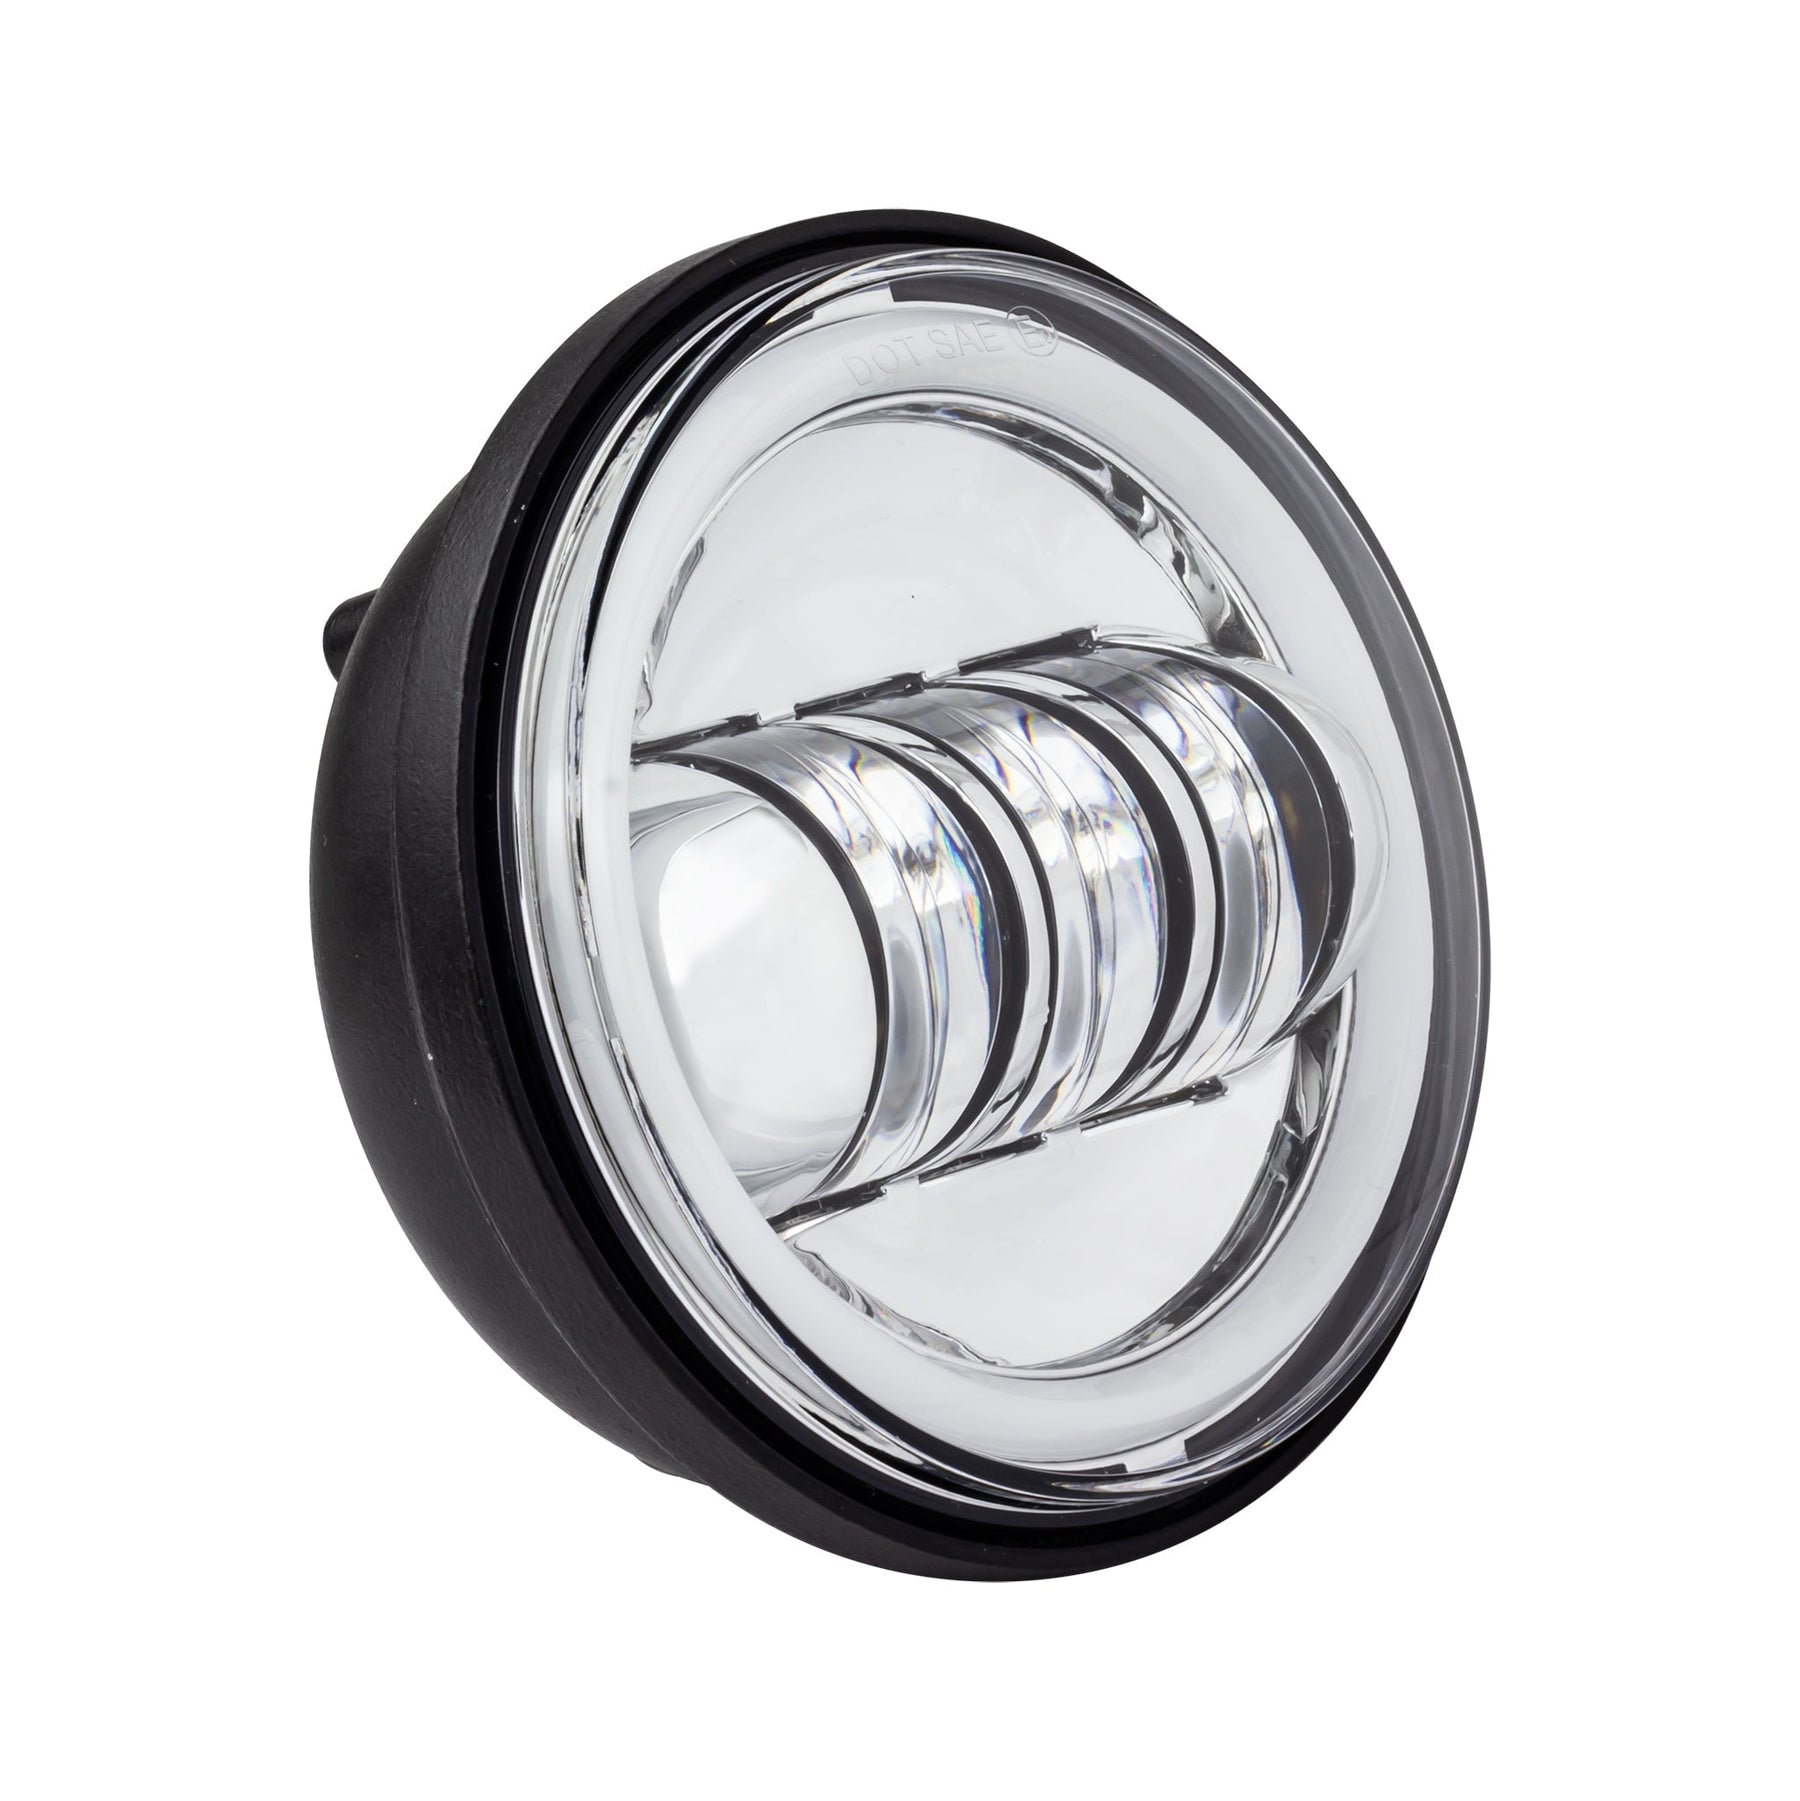 LED White Halo 7 Headlight & 4.5 Passing Lamp Kit for Harley